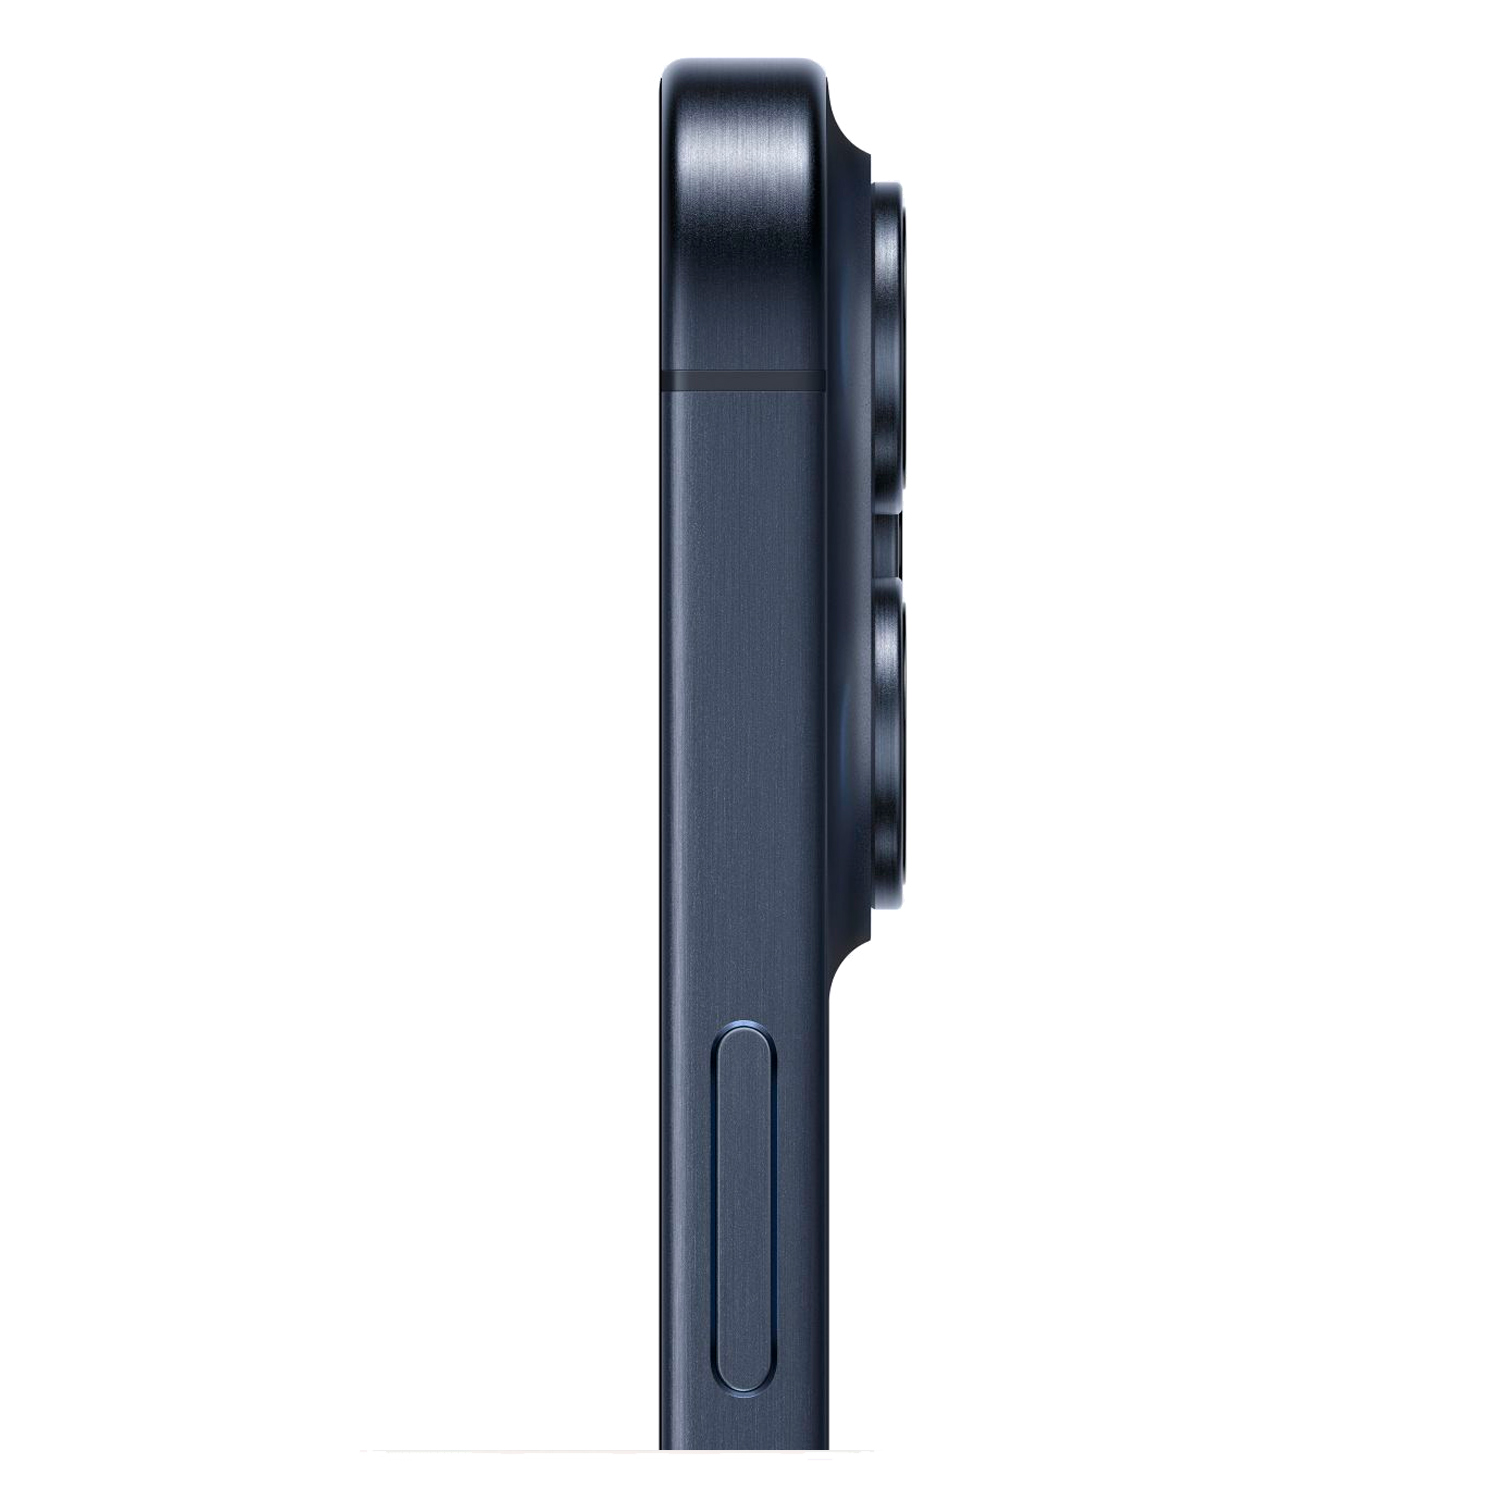 Apple iPhone 15 Pro A3104 CH/A 256GB Dual SIM Fisico Tela 6.1" - Azul Titânio